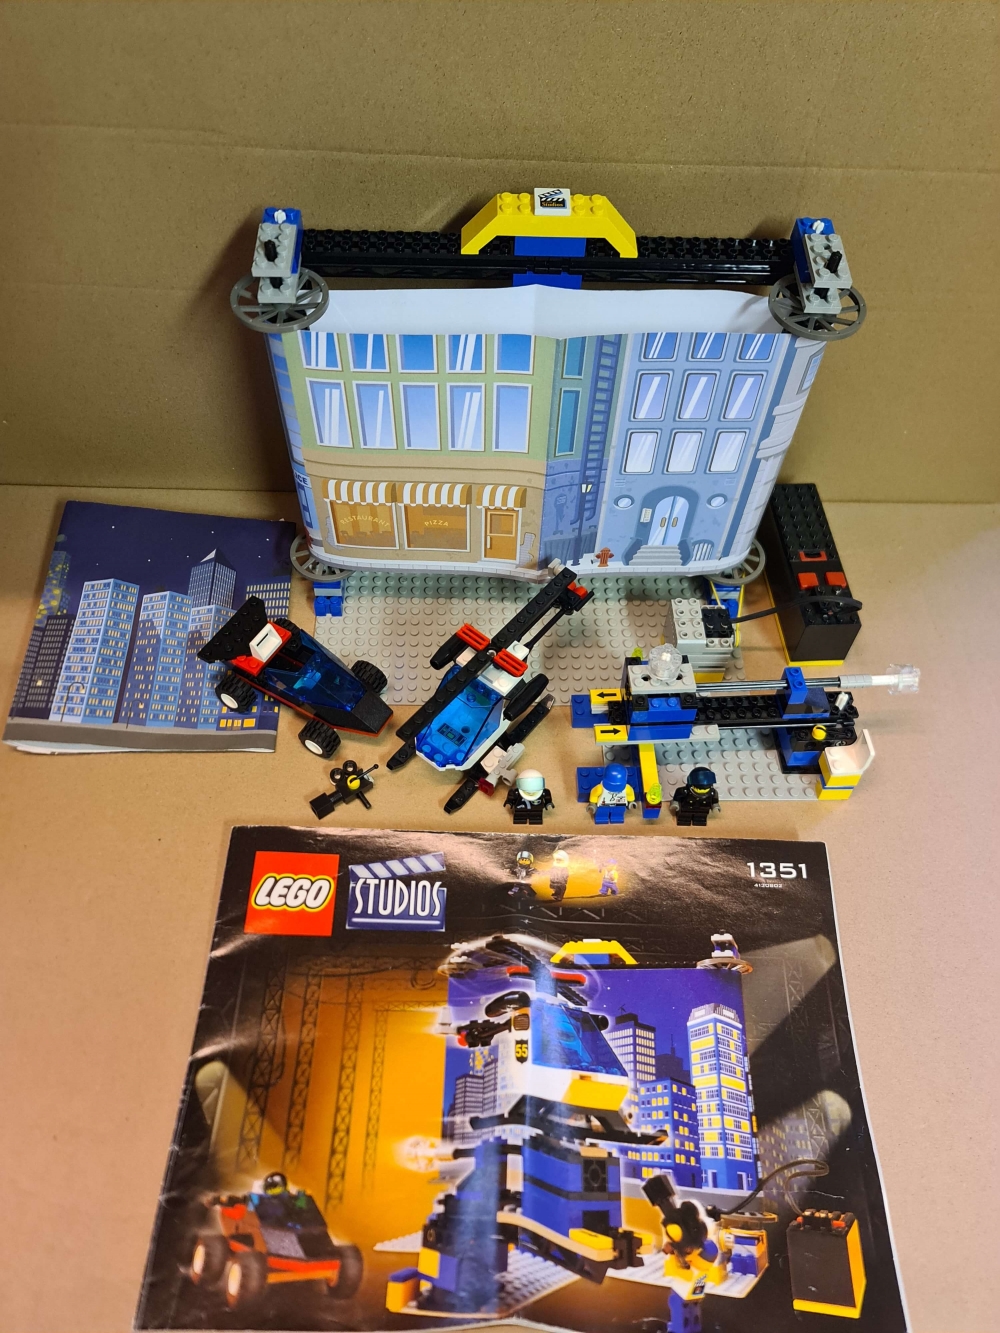 Sett 1351 fra Lego Studios serien
Flott sett. Komplett med manual.
Ingen lekkasje I batteriboks. Testet og fungerer.